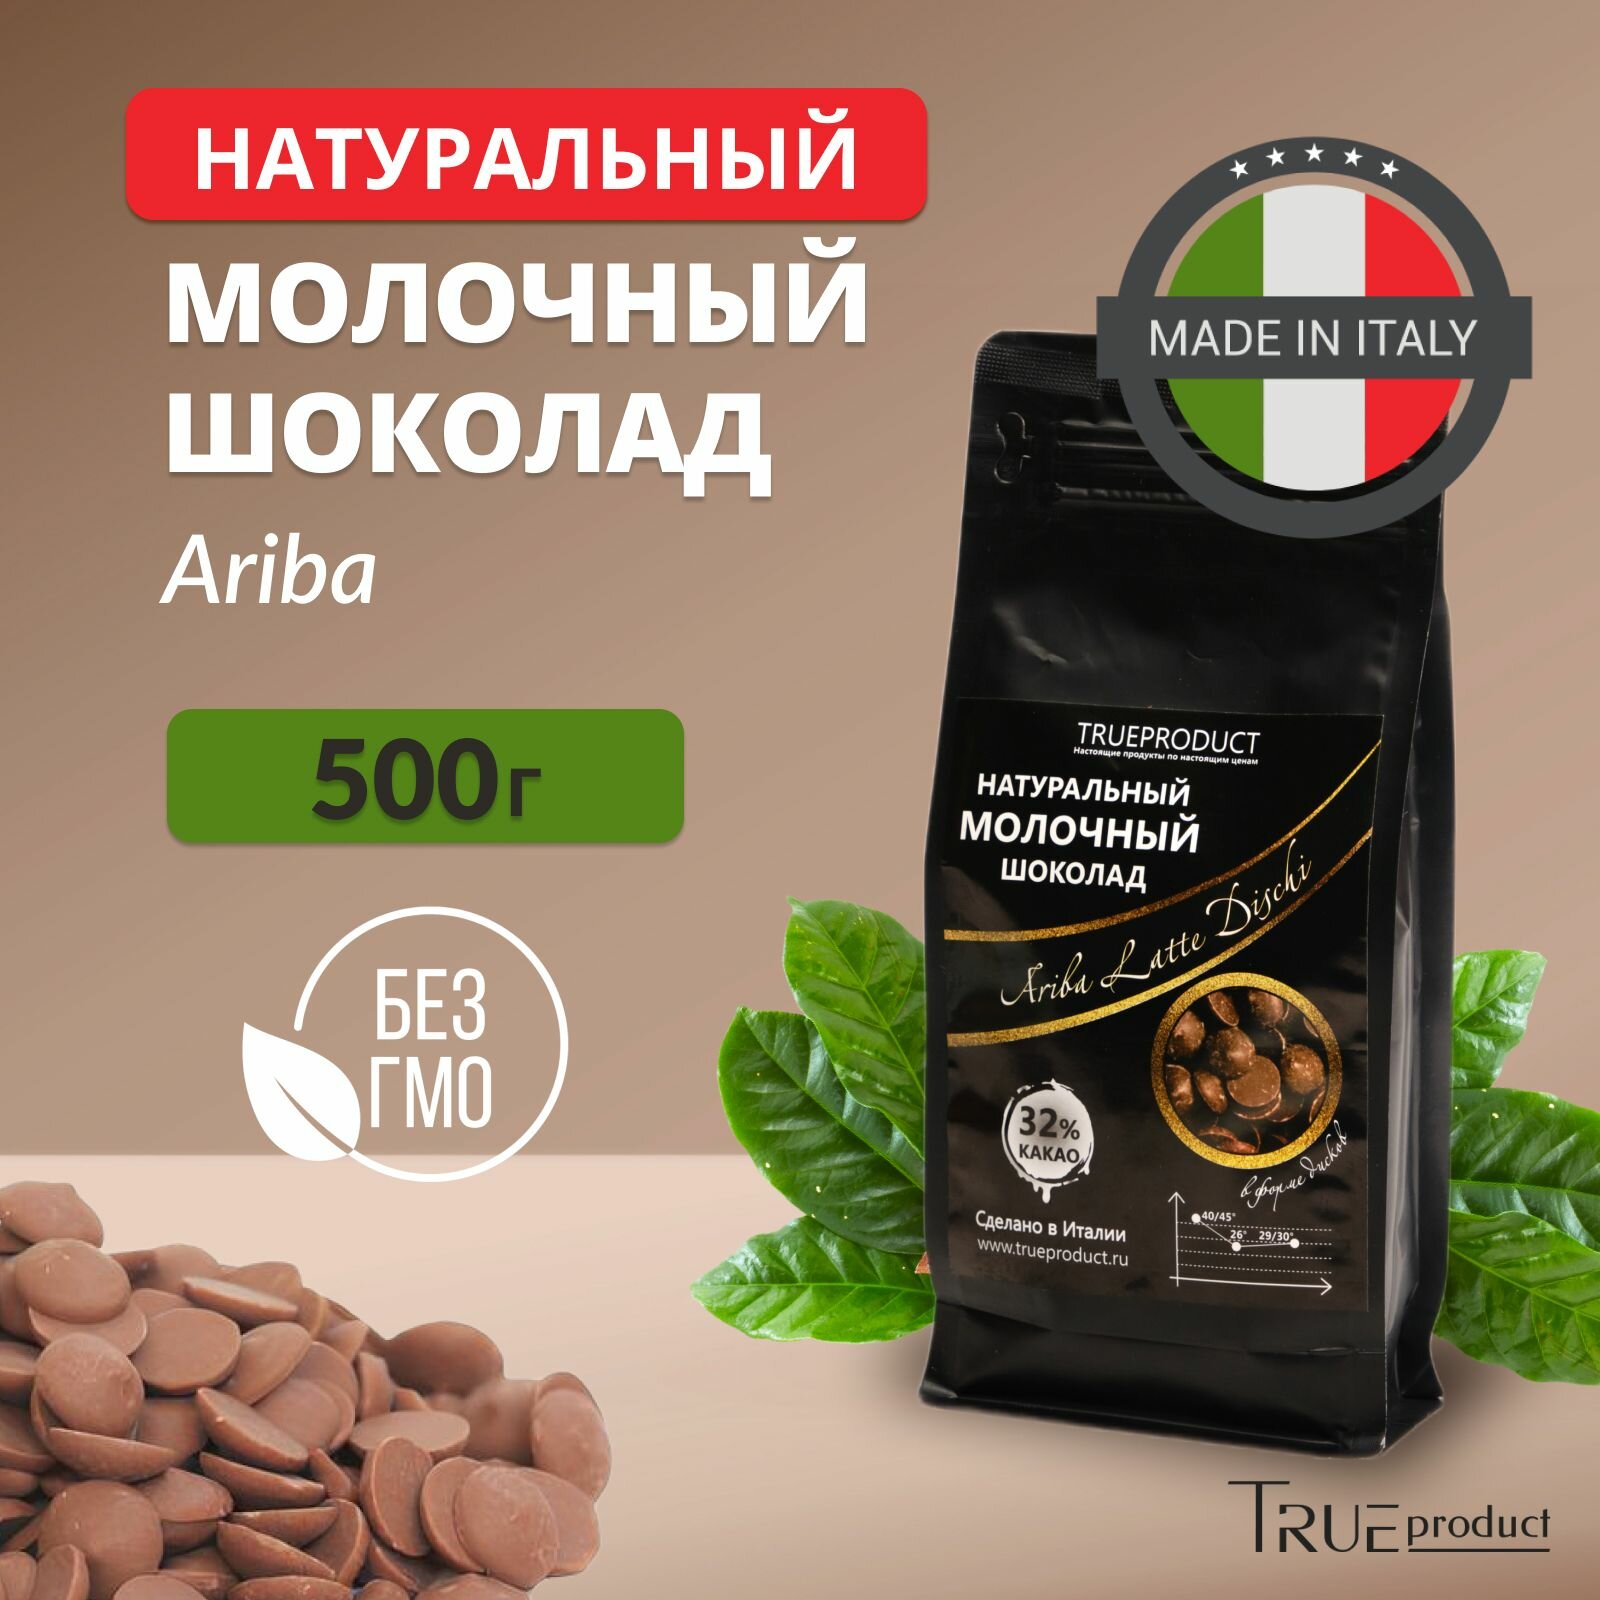 Молочный шоколад Ariba Latte Dischi 32% в форме дисков, упаковка 500 гр